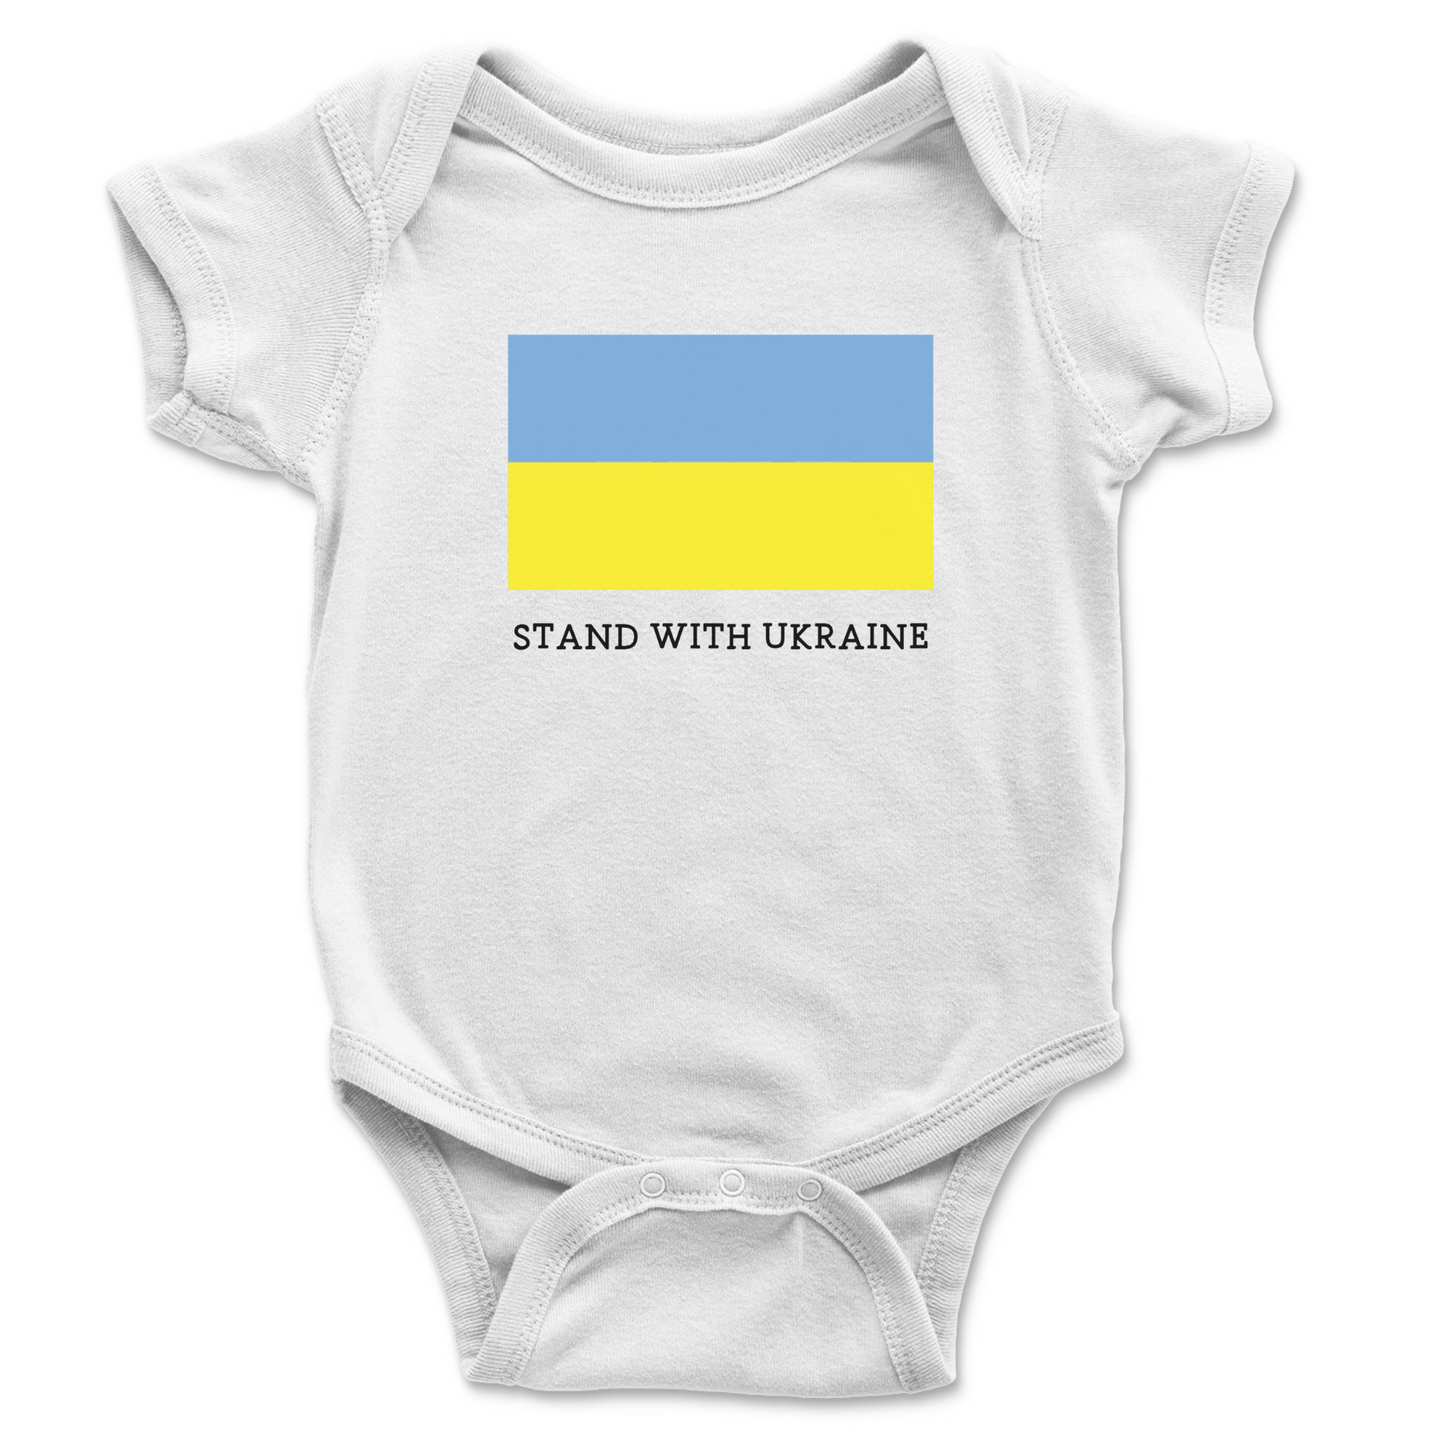 STAND WITH UKRAINE - Short Sleeve Onesie